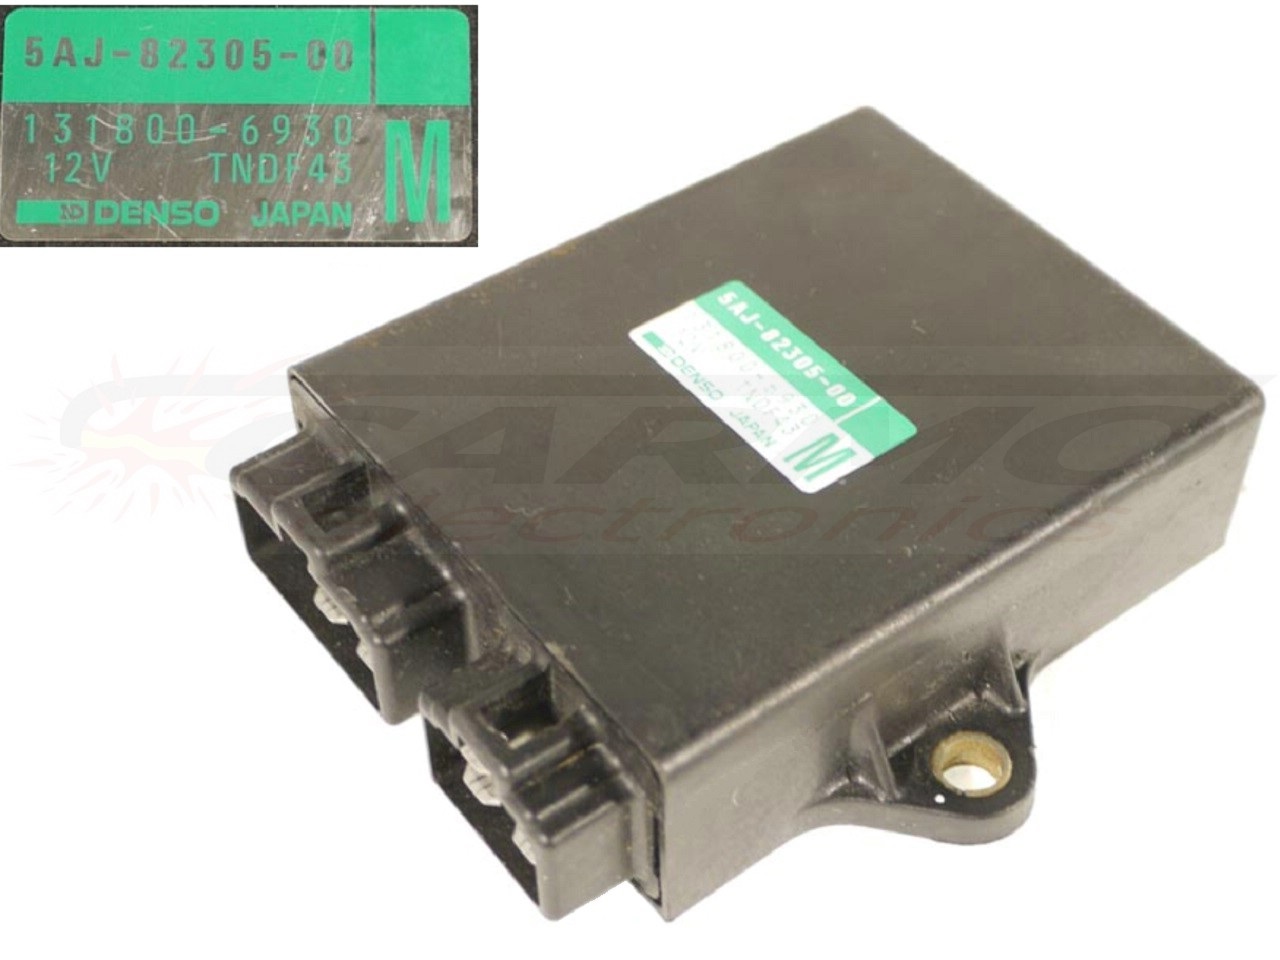 XV125 Virago igniter ignition module CDI TCI Box (5AJ-82305-00, 131800-6930) 1997-2000